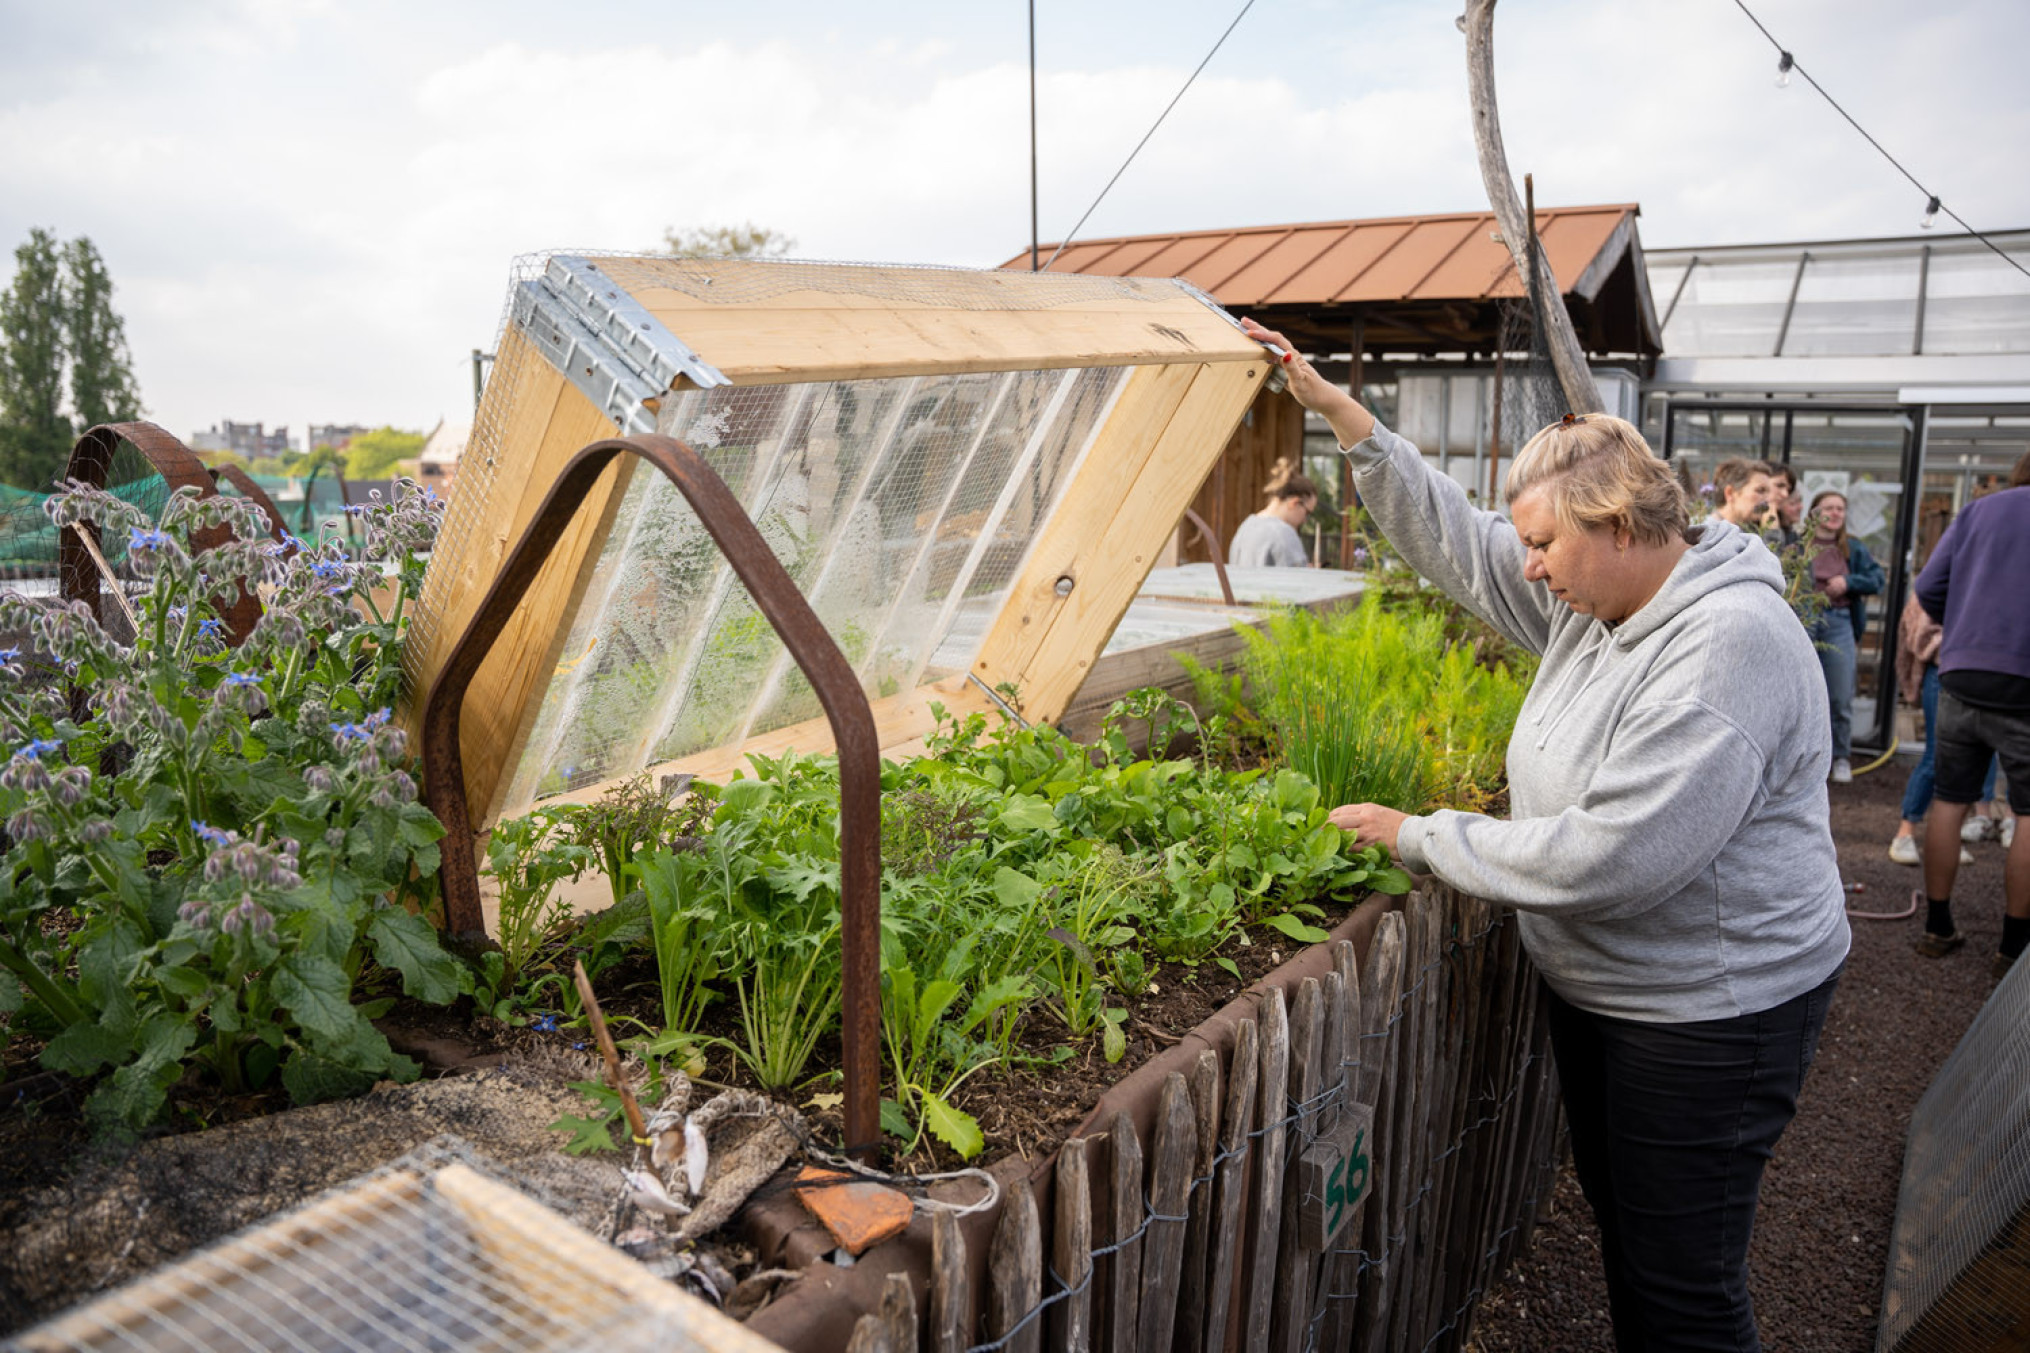 Antwerpse stadsmensen zoeken de rust van tuinieren op